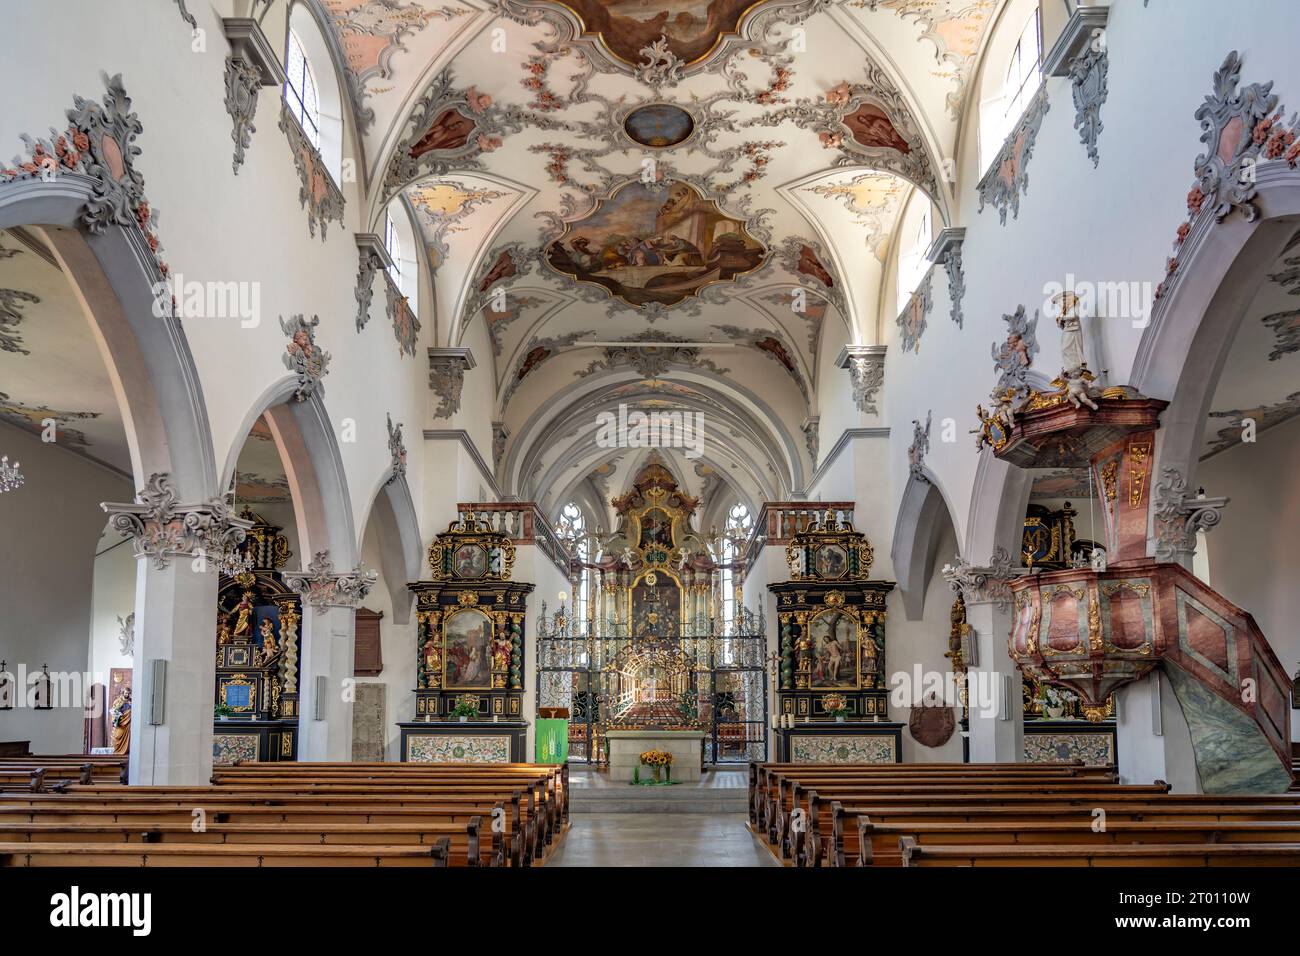 Innenraum der Stadtkirche Laufenburg, Aargau, Schweiz, Europa |   Laufenburg parish church interior, Laufenburg, Aargau, Switzerland, Europe Stock Photo